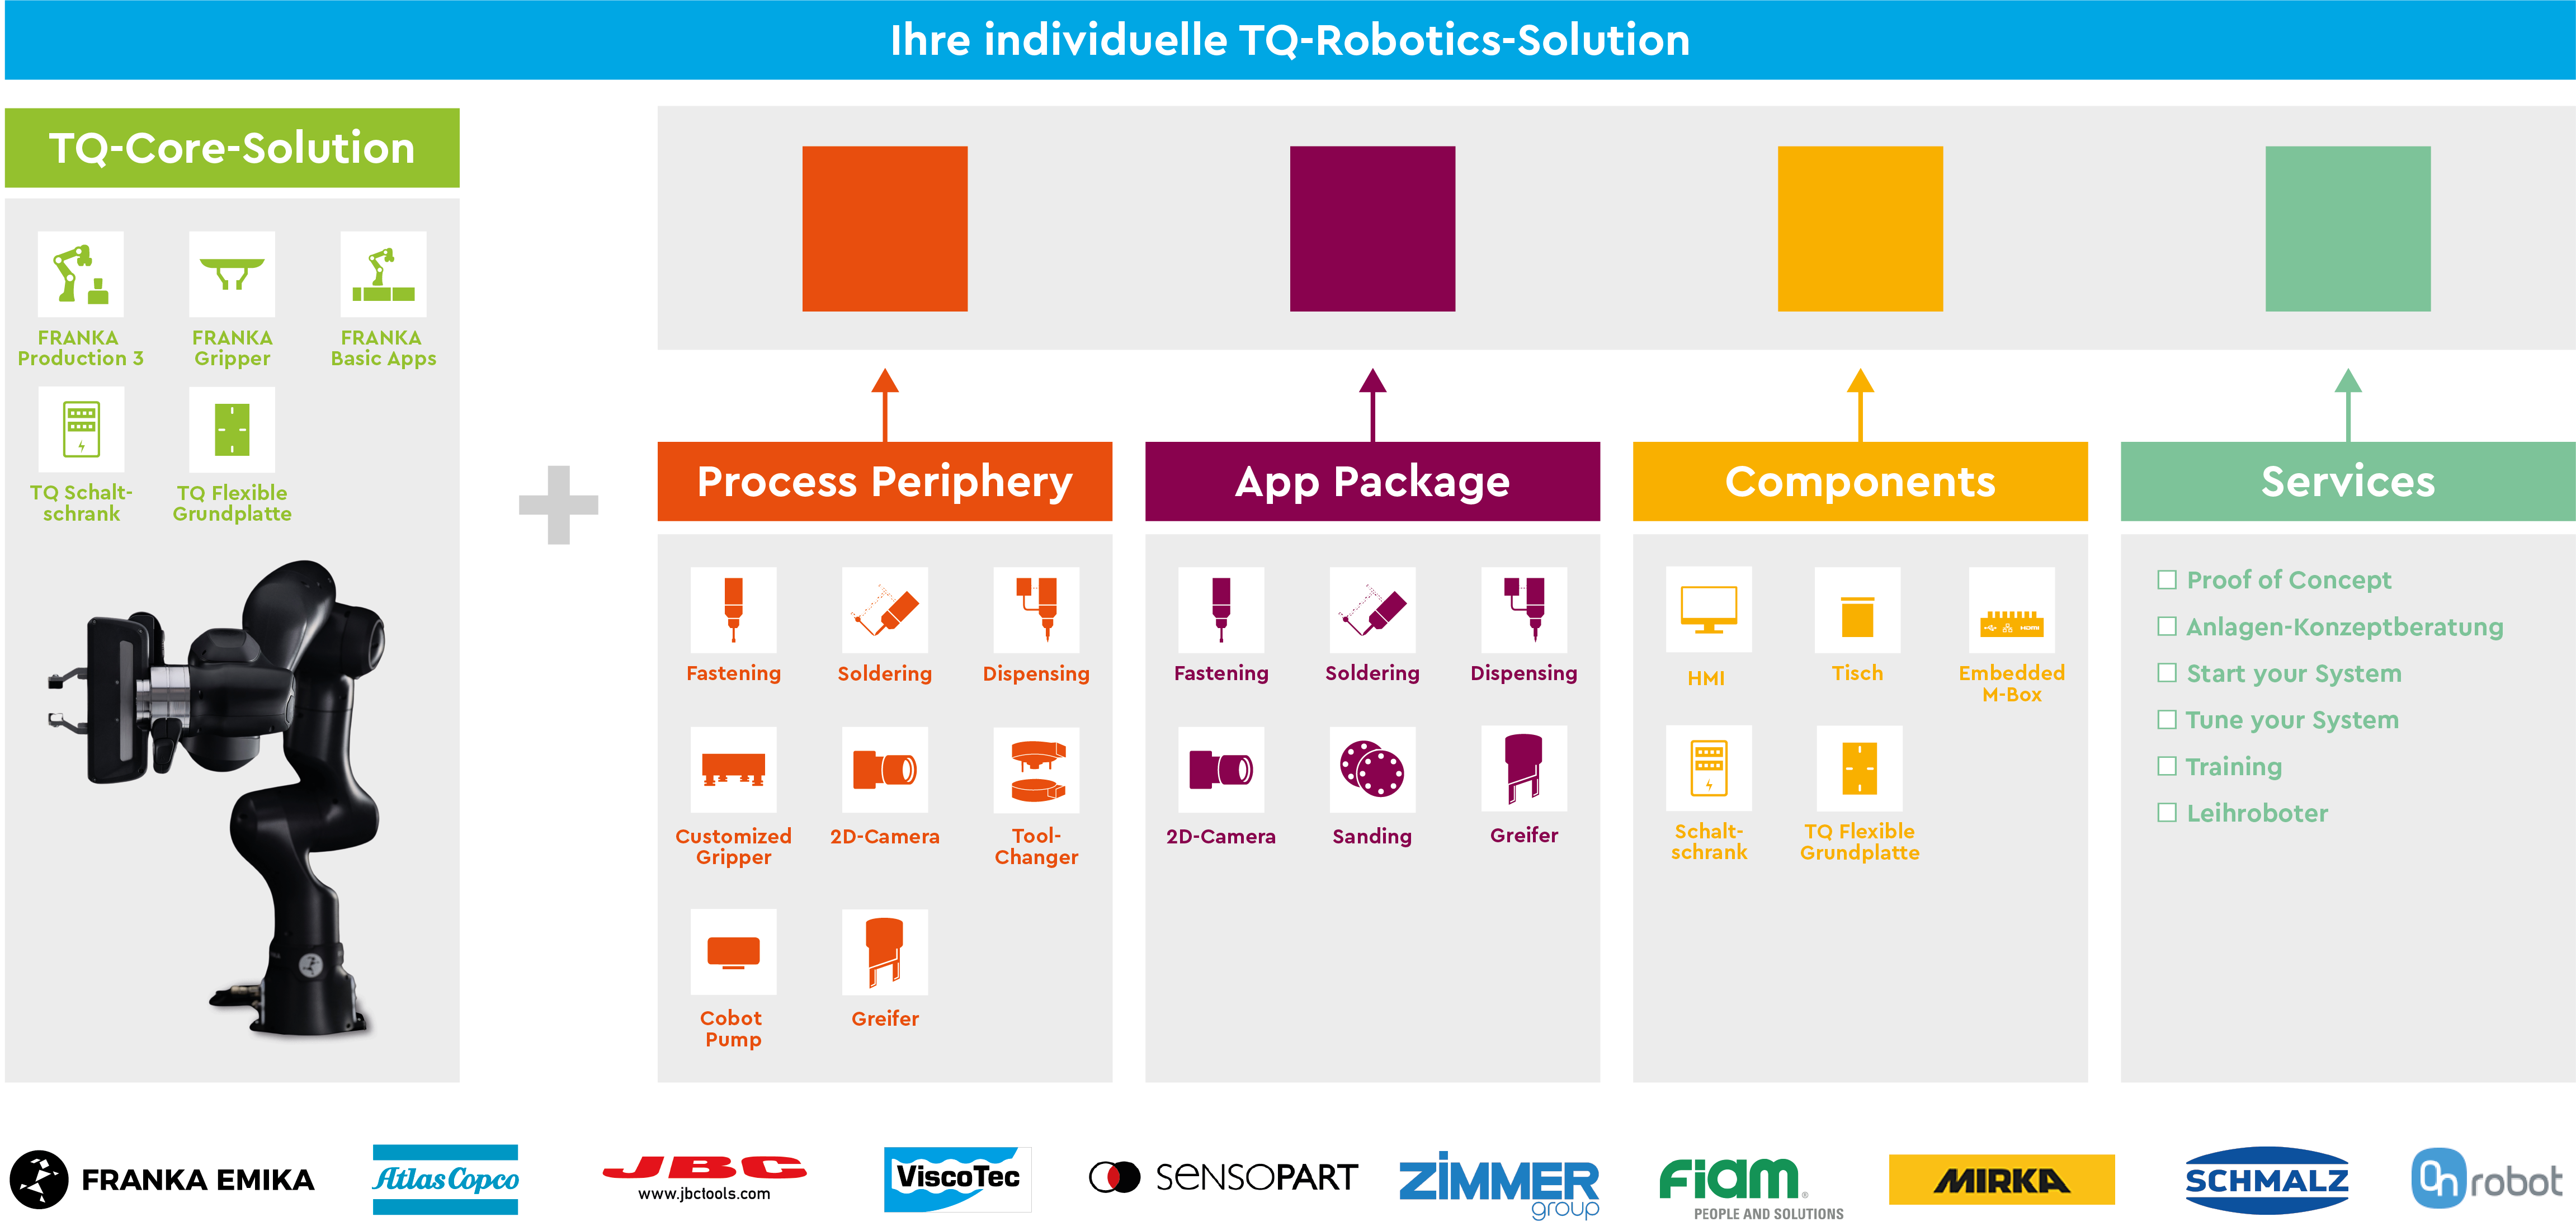 TQ-Robotics Solutions